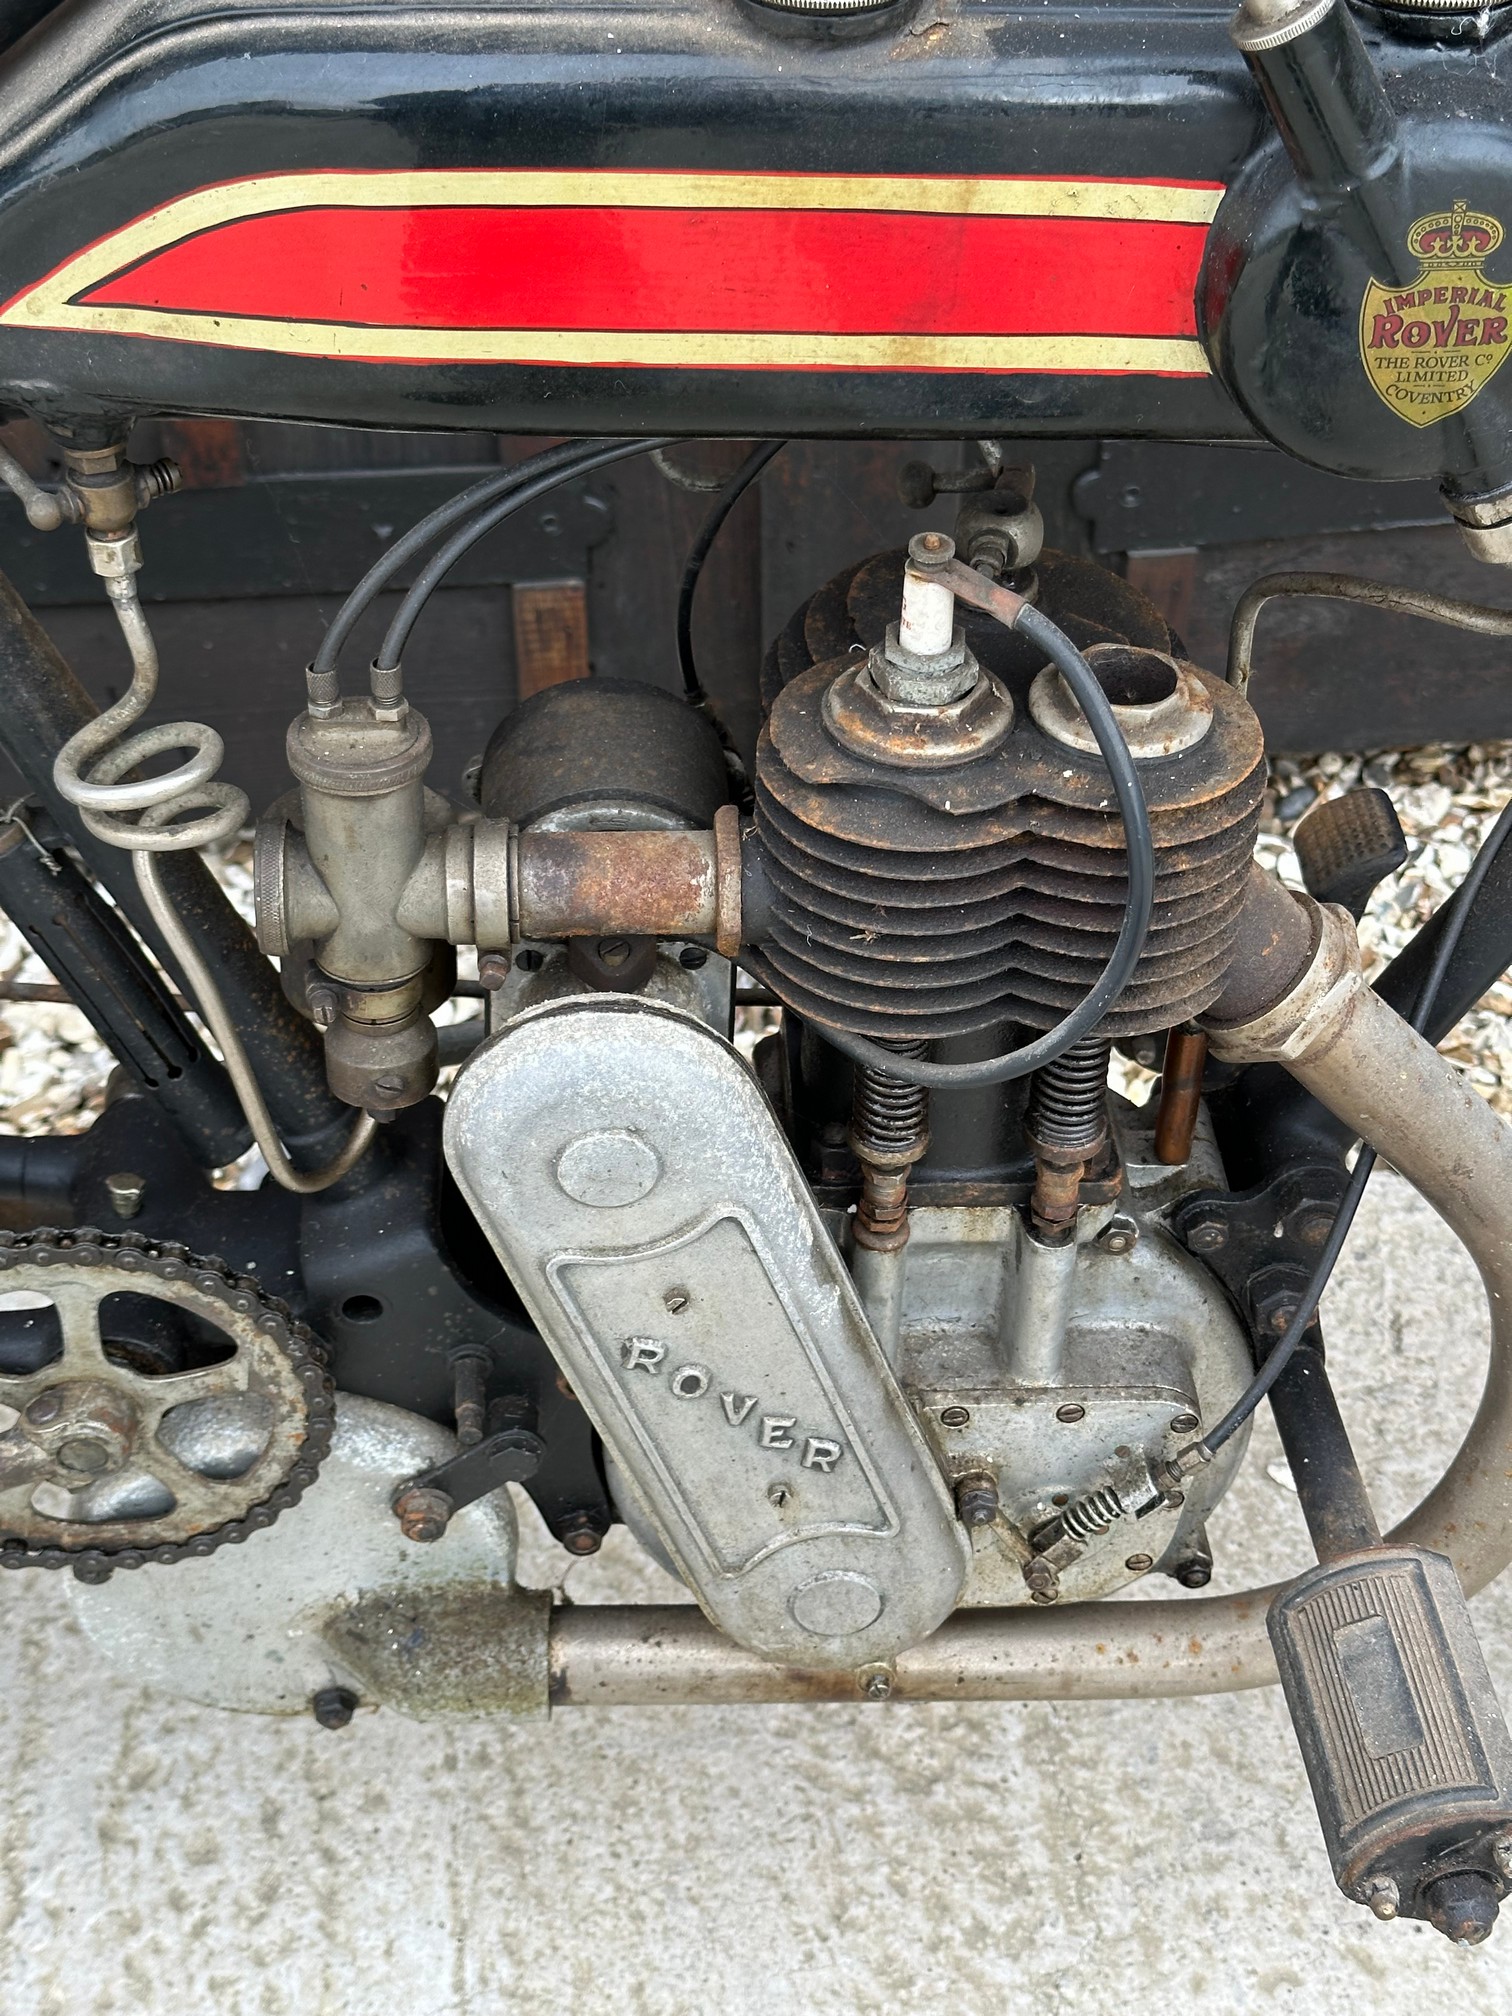 Circa 1912/13 ROVER 499cc 3 1/2HP - Image 7 of 9